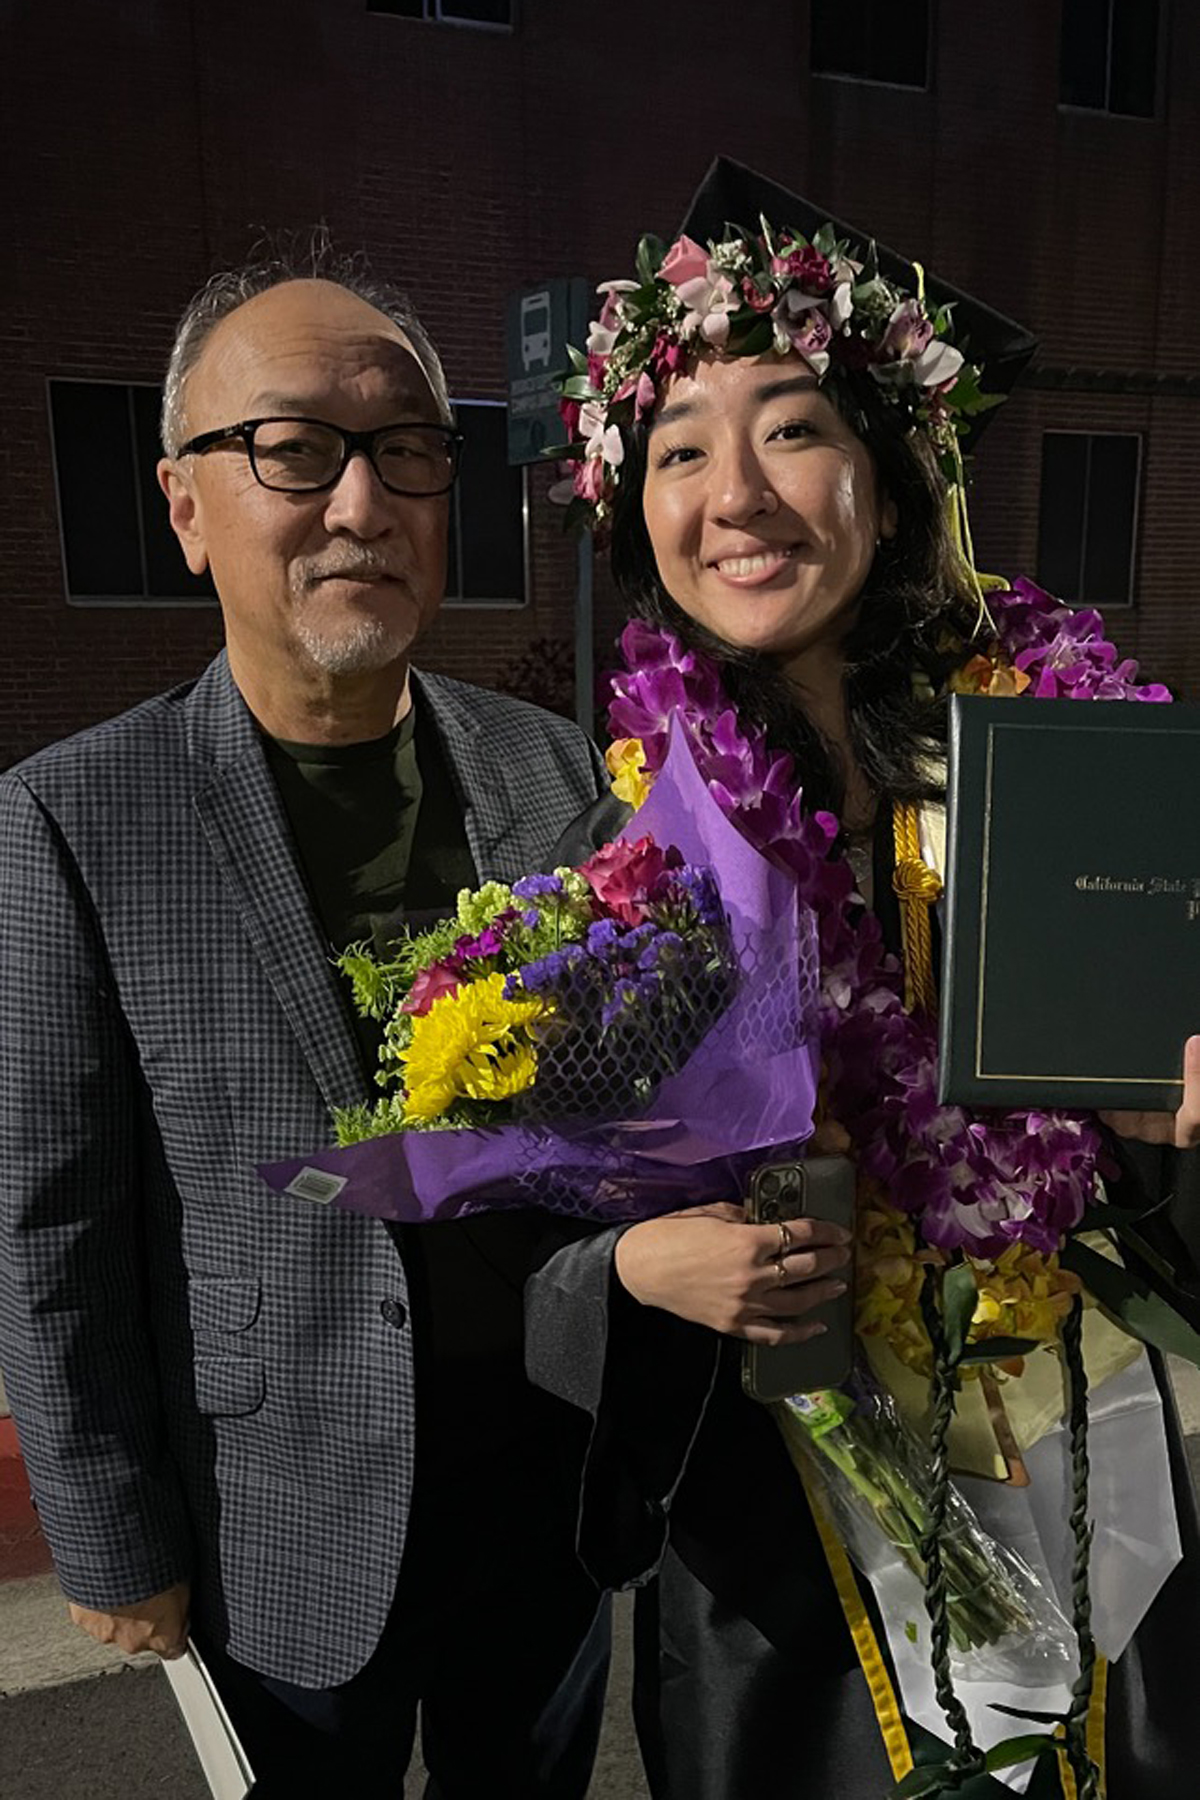 Bert and His Daughter at Graduation